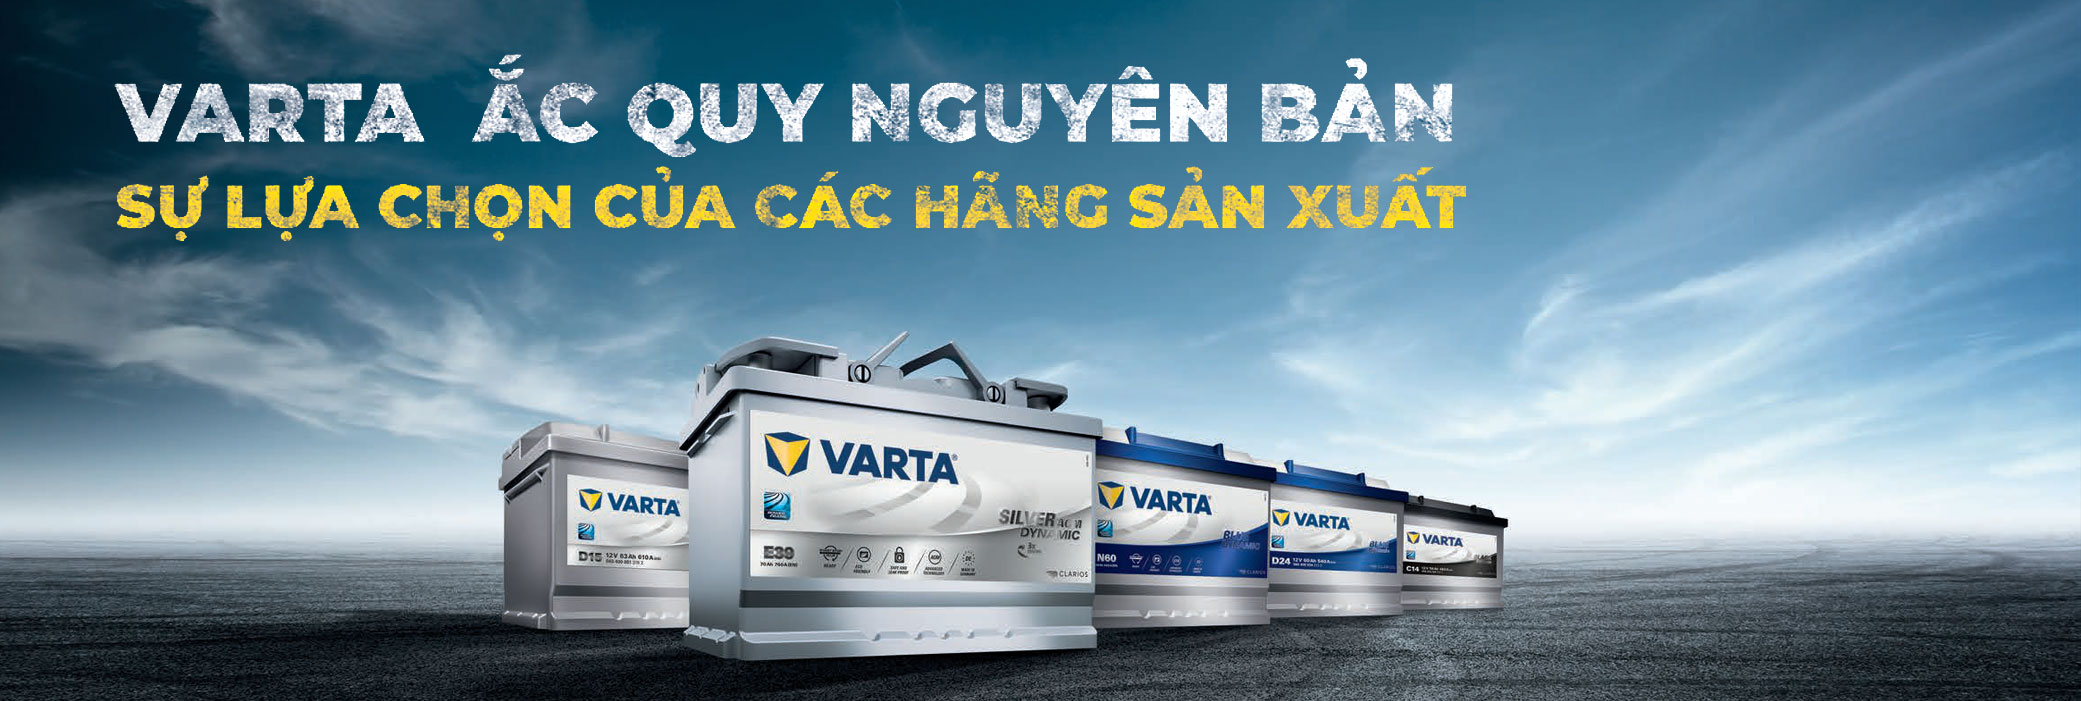 Các dòng sản phẩm Varta tại Việt Nam